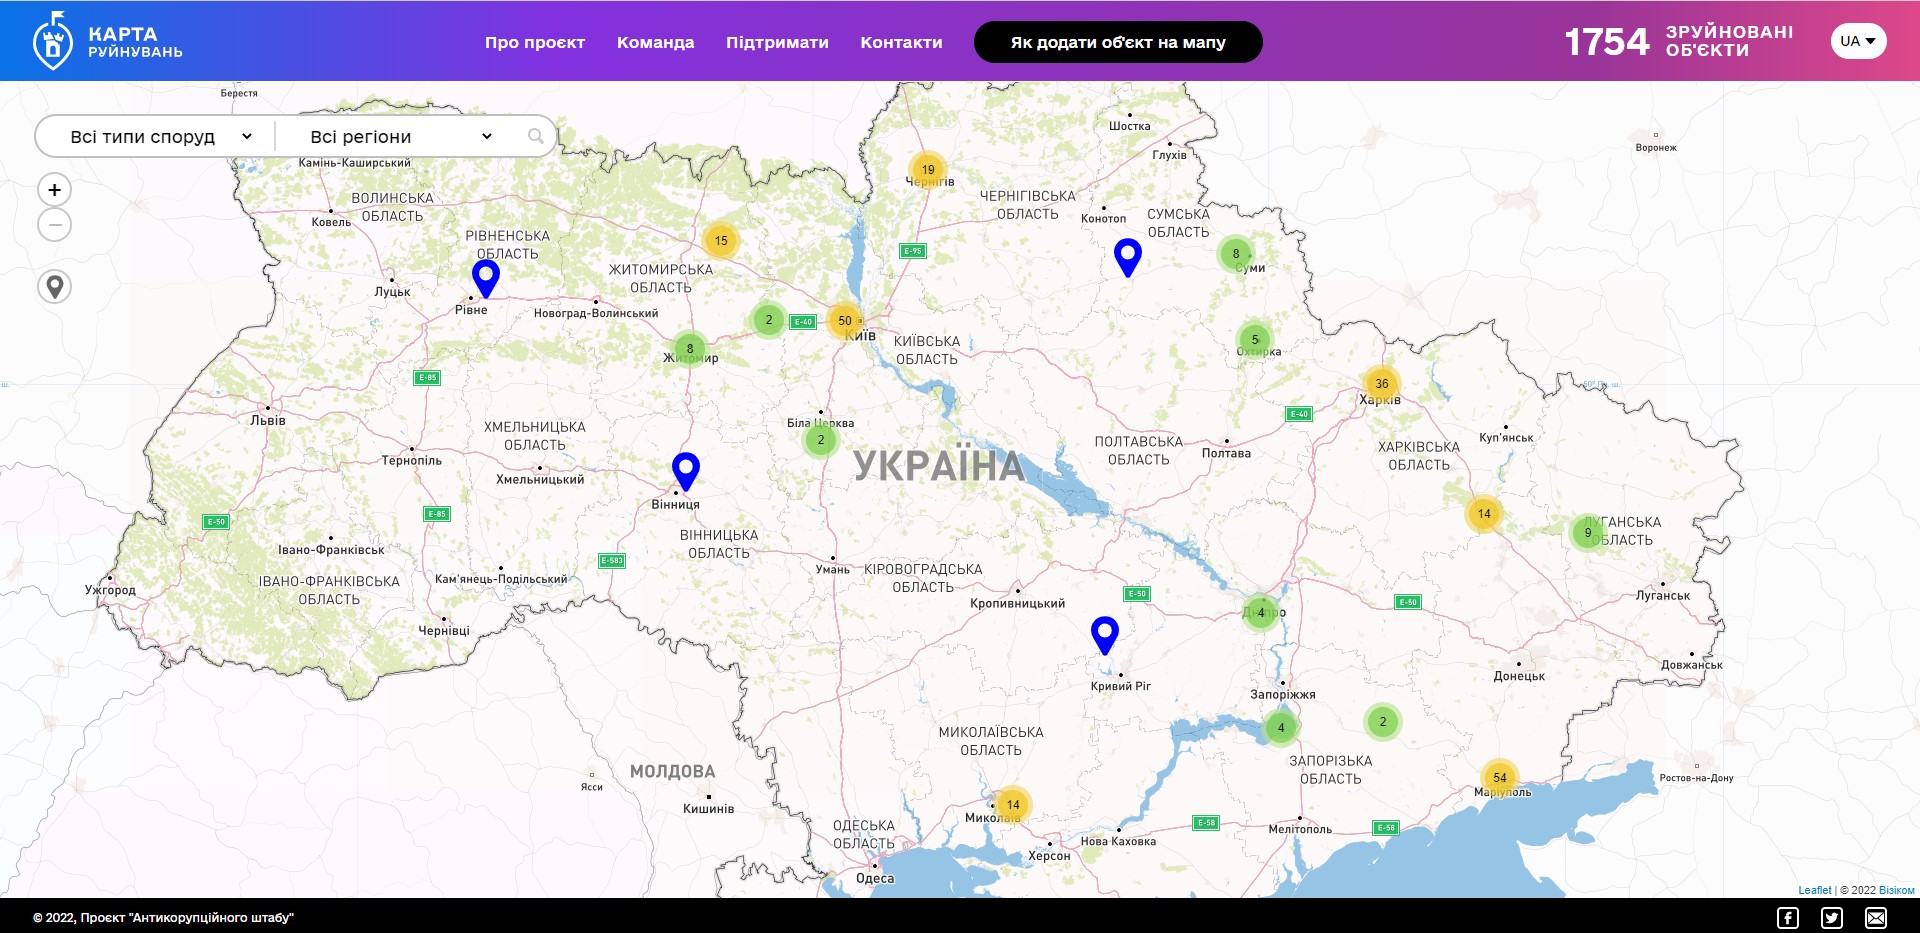 Карта разрушений на территории Украины в результате вооруженной российской агрессии